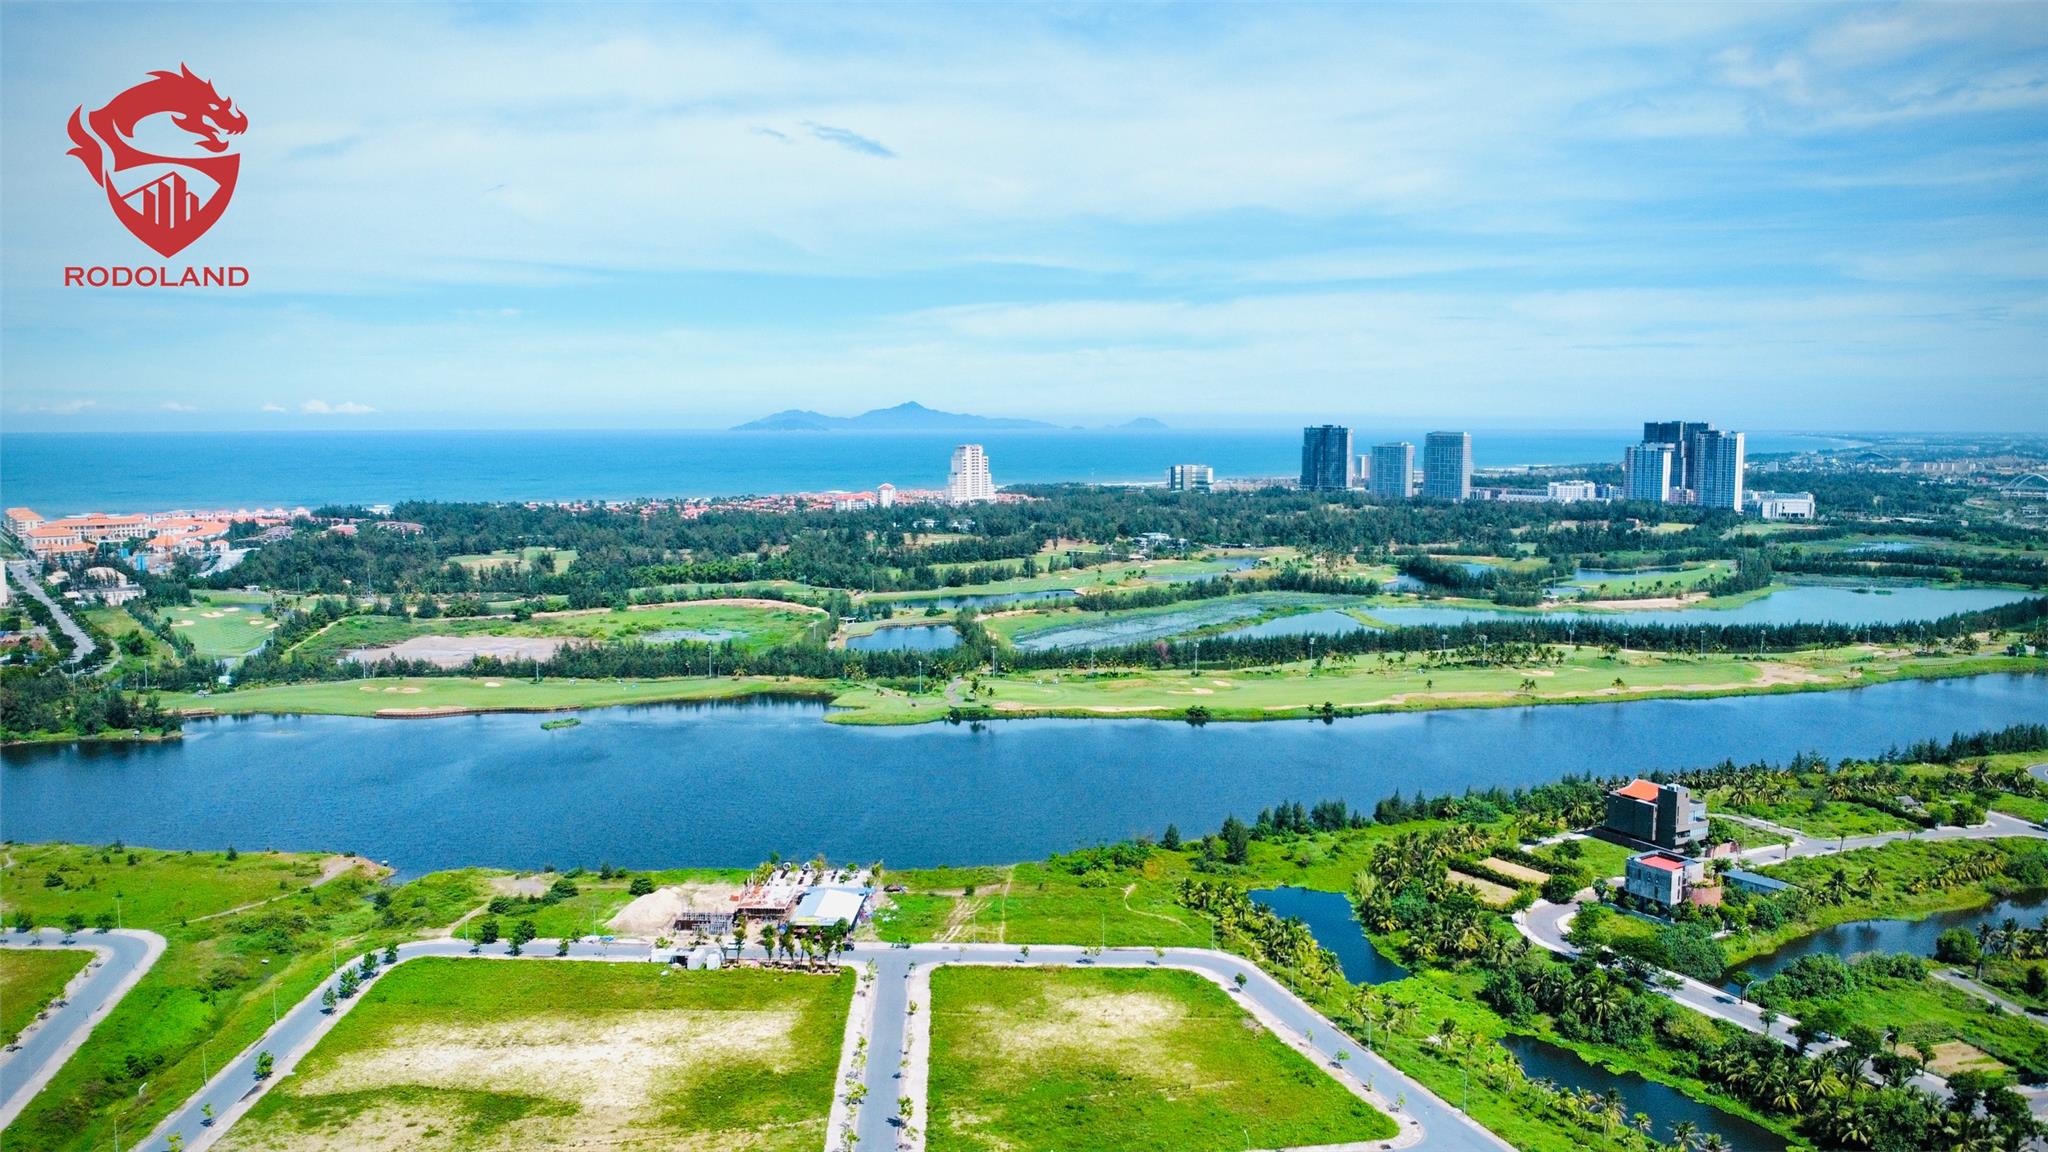 Mua bán nhà đất FPT City Đà Nẵng – Liên hệ BĐS Rồng Đỏ 0905.31.89.88 3